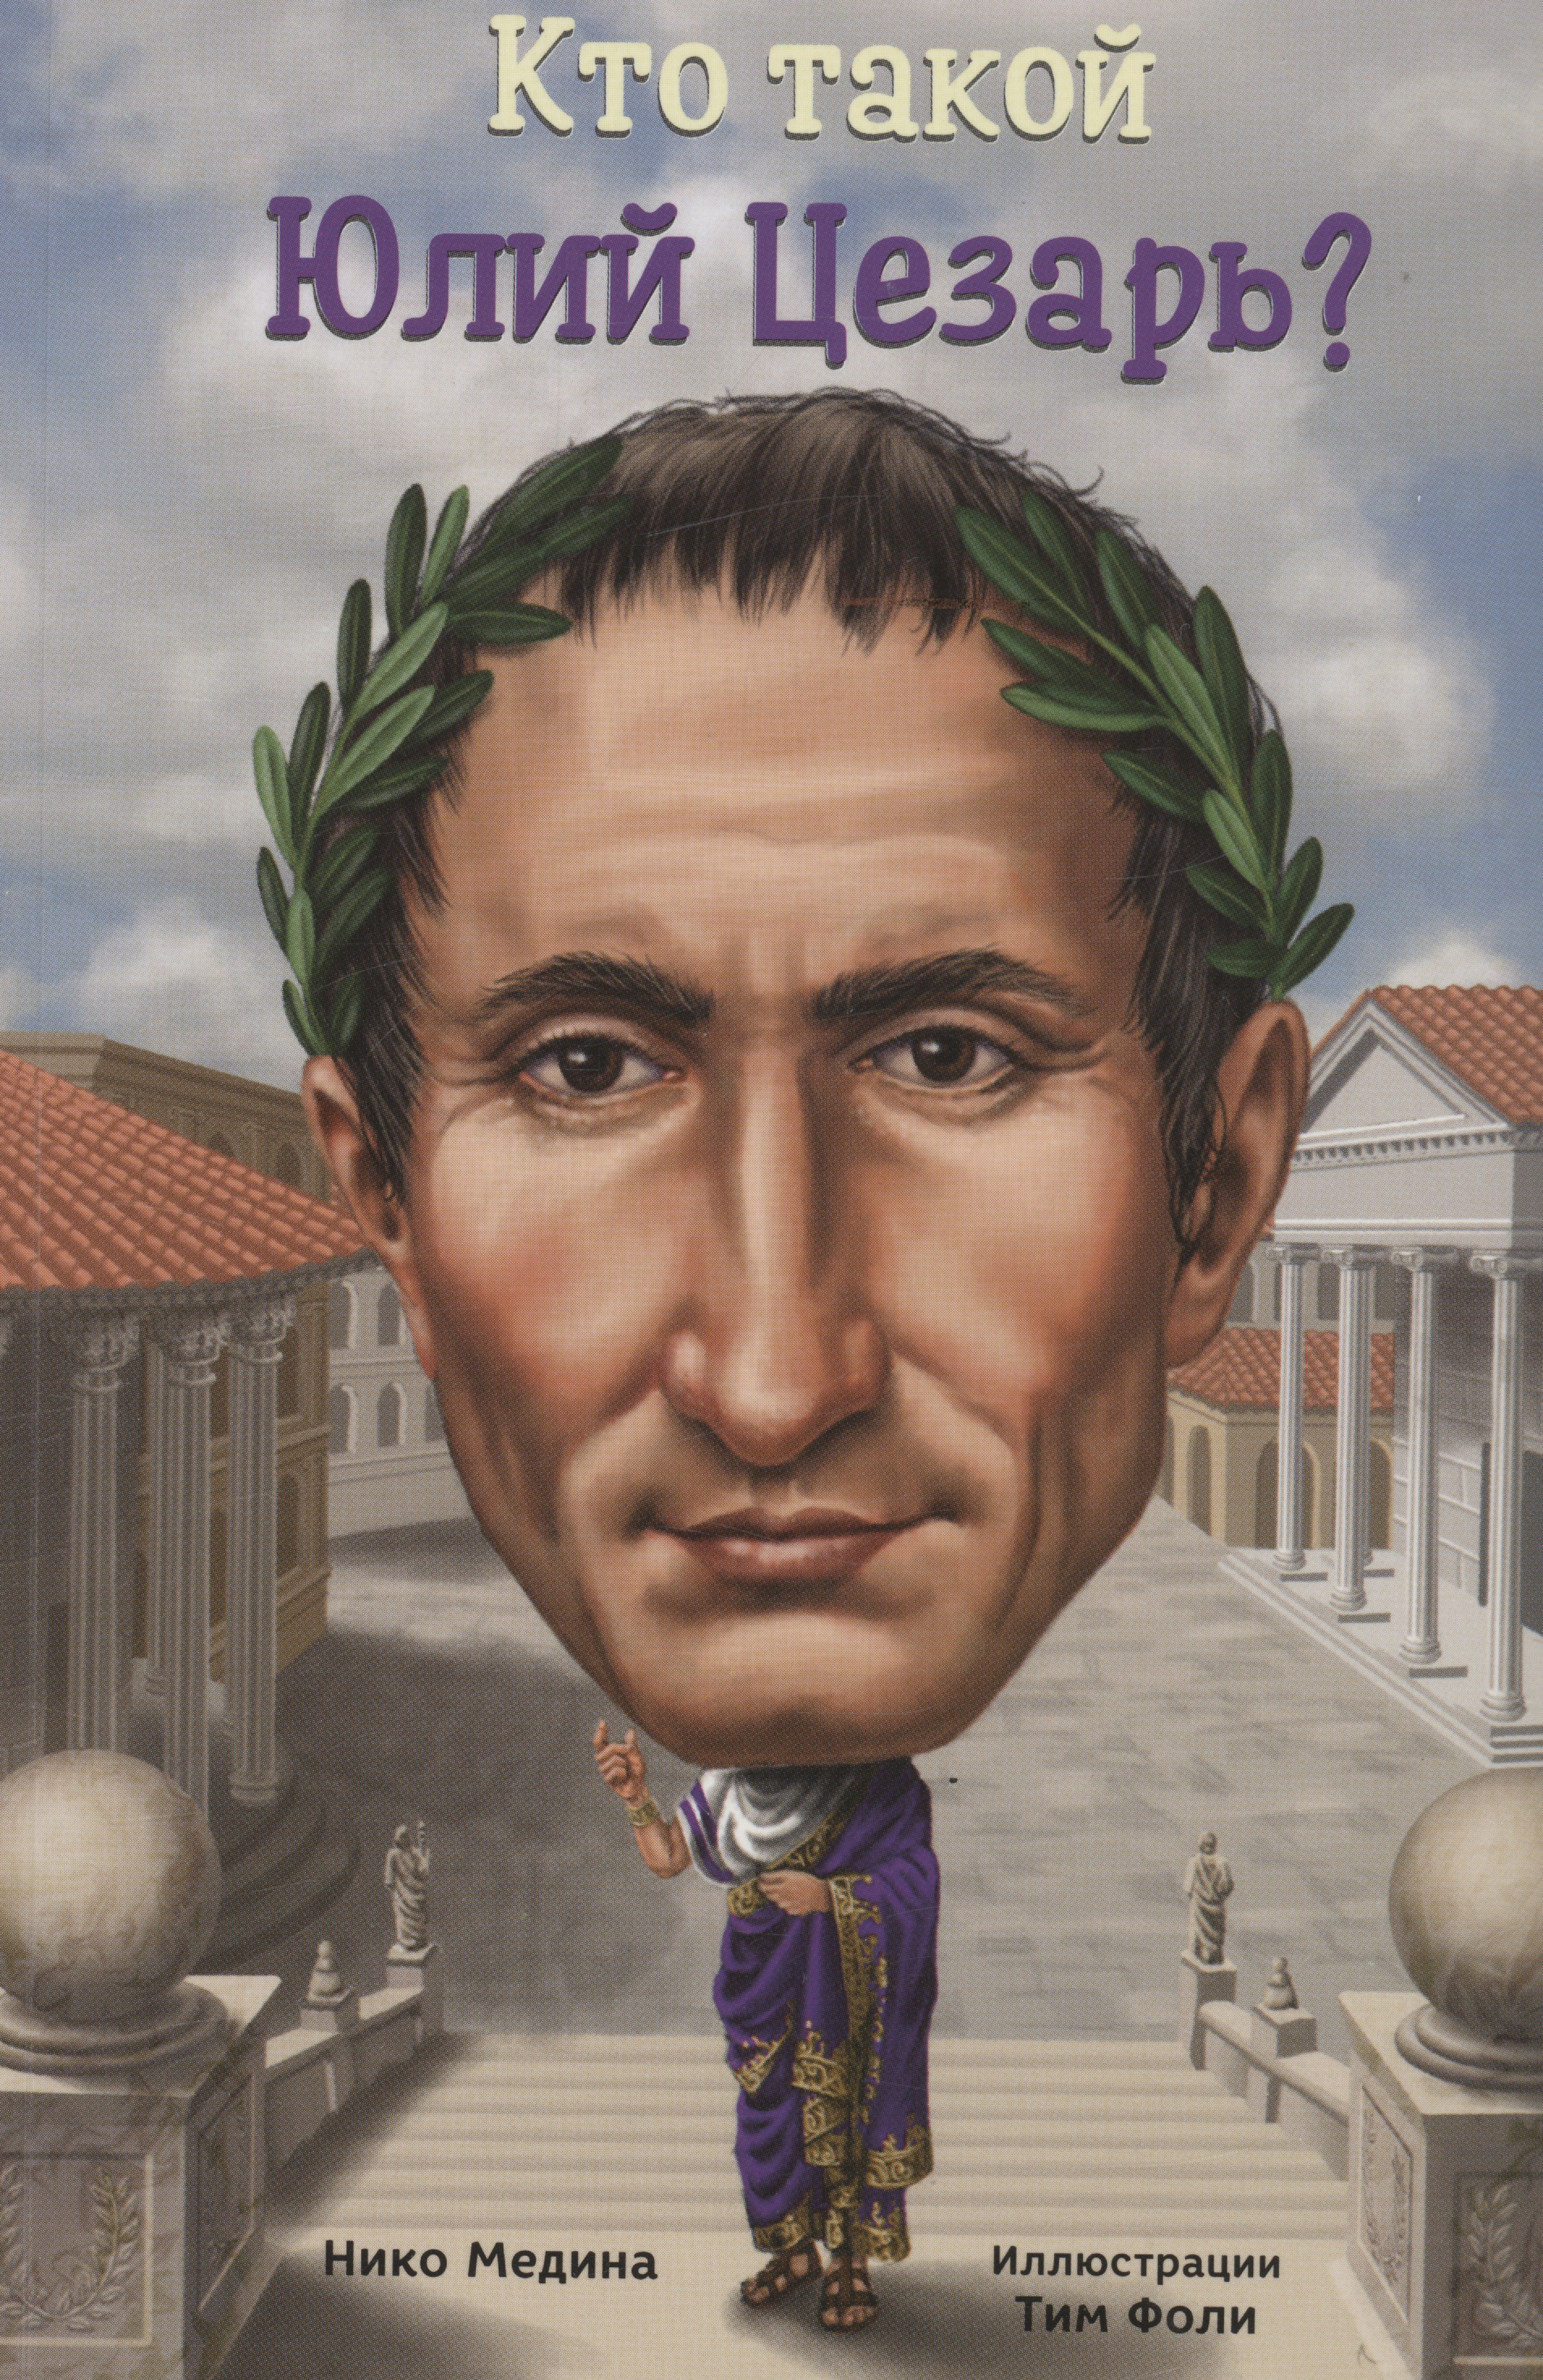 Кто такой Юлий Цезарь